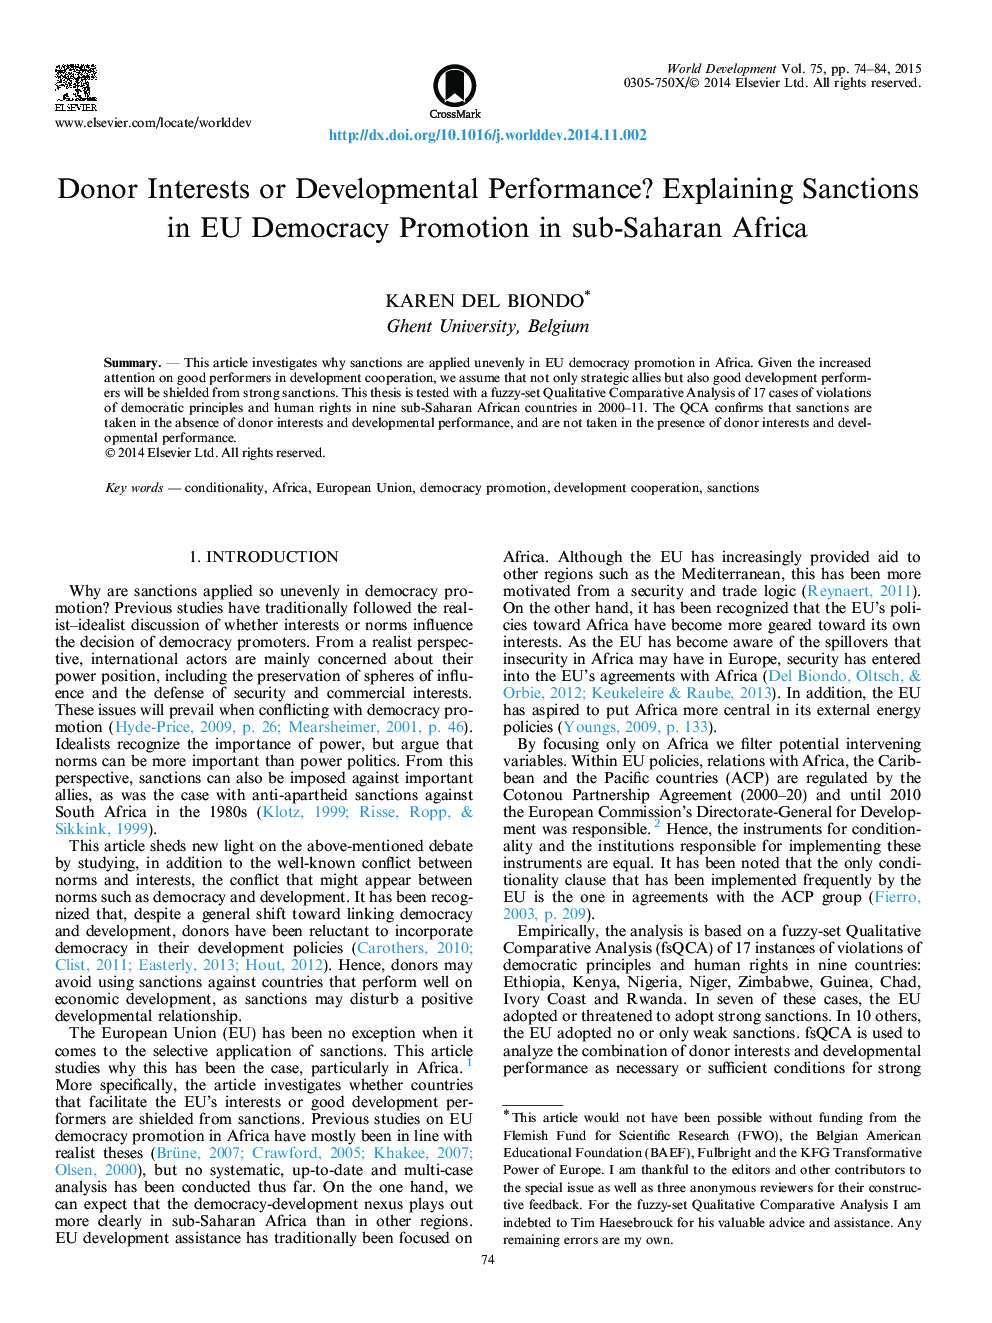 اهدای اهدا کننده یا عملکرد توسعه؟ تفسیر تحریم ها در اتحادیه اروپا توسعه دموکراسی در کشورهای جنوب صحرای آفریقا 